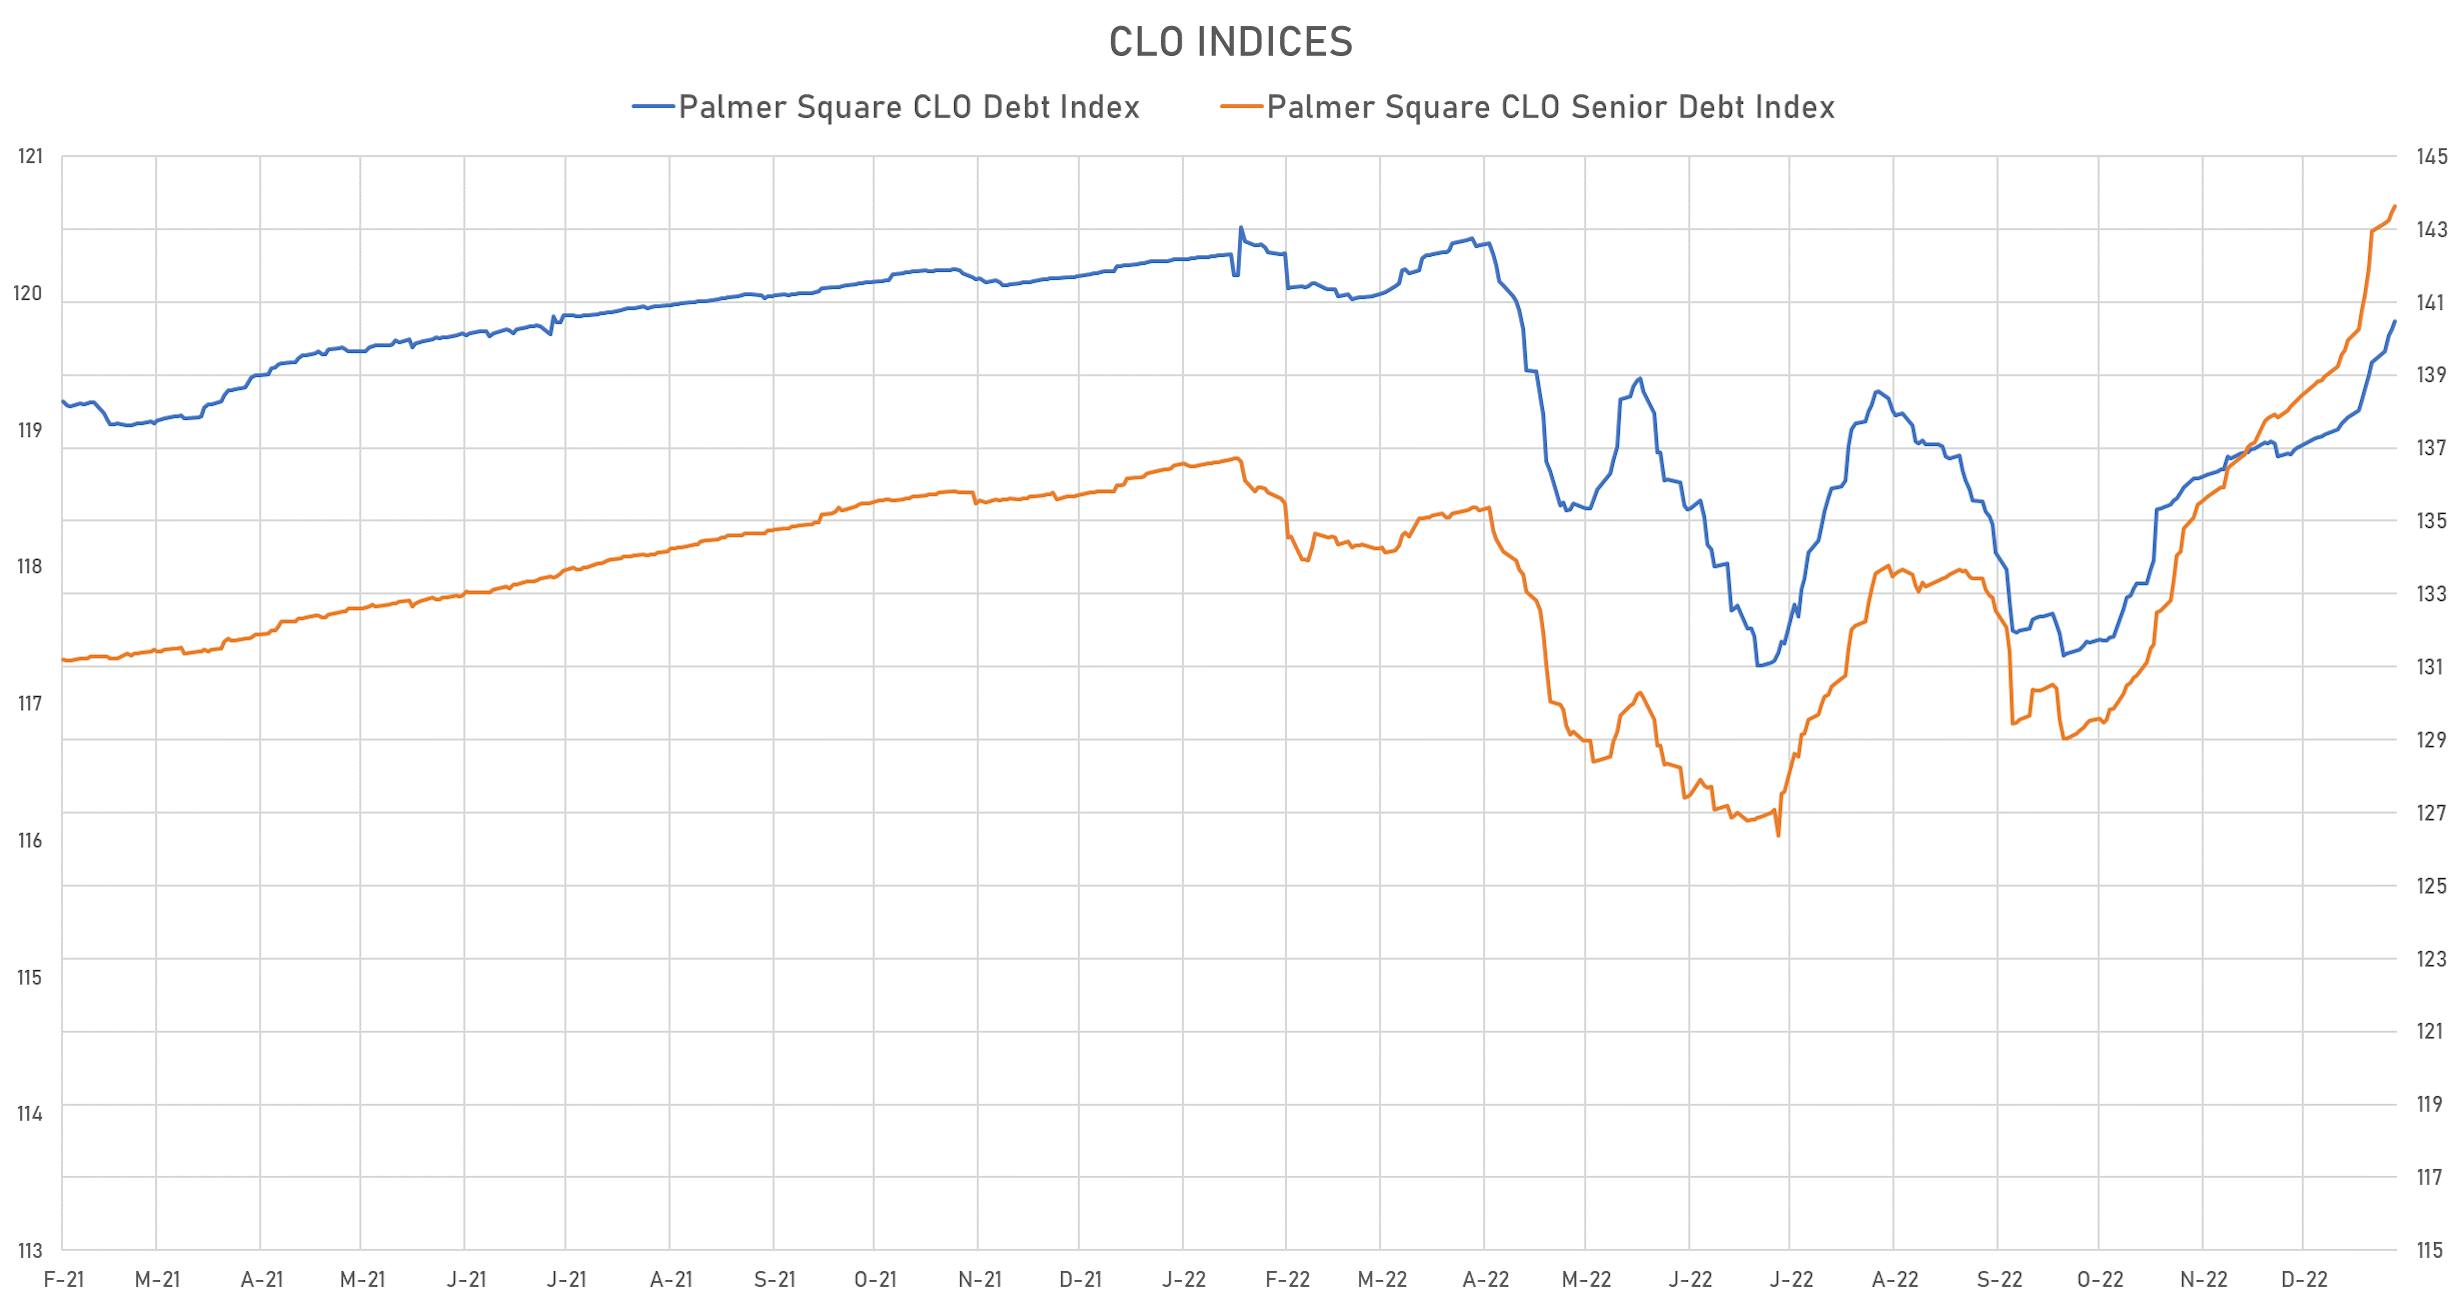 Palmer Square CLO Indices | Sources: phipost.com, Refinitiv data